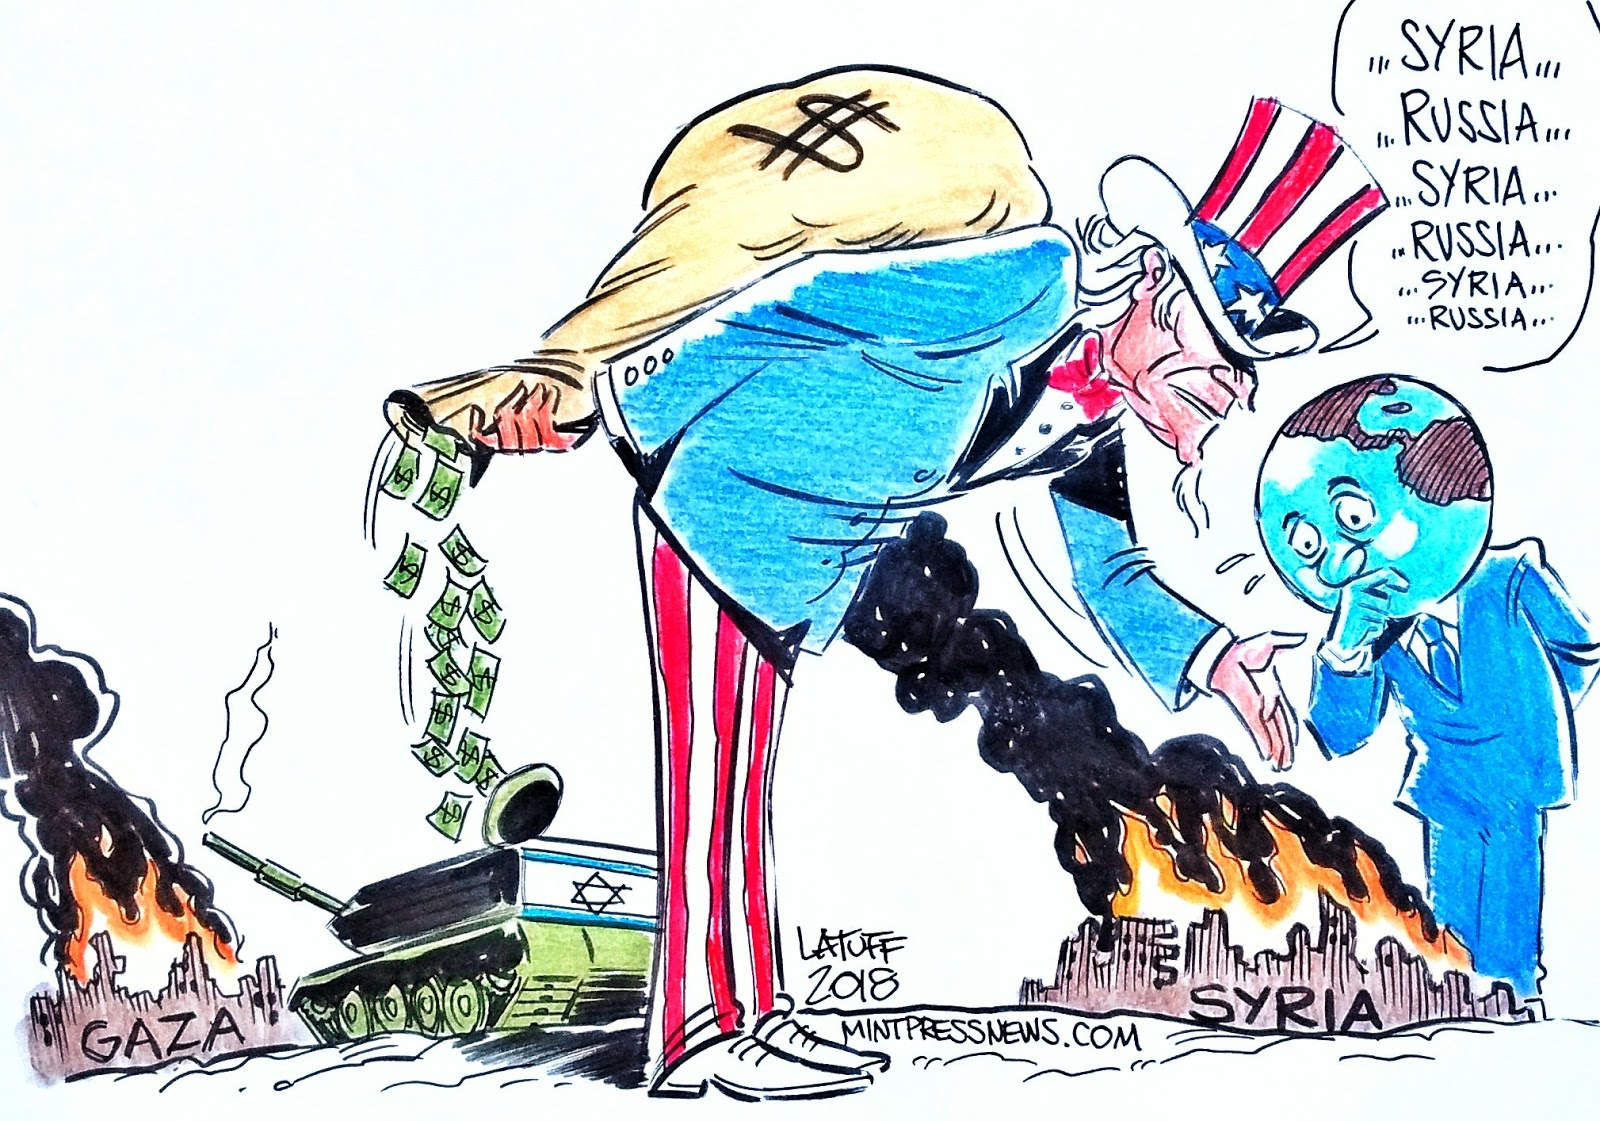 Угроза миру 1. Россия в Сирии карикатуры. Советская карикатура про Сирию. США-Сирия карикатура.